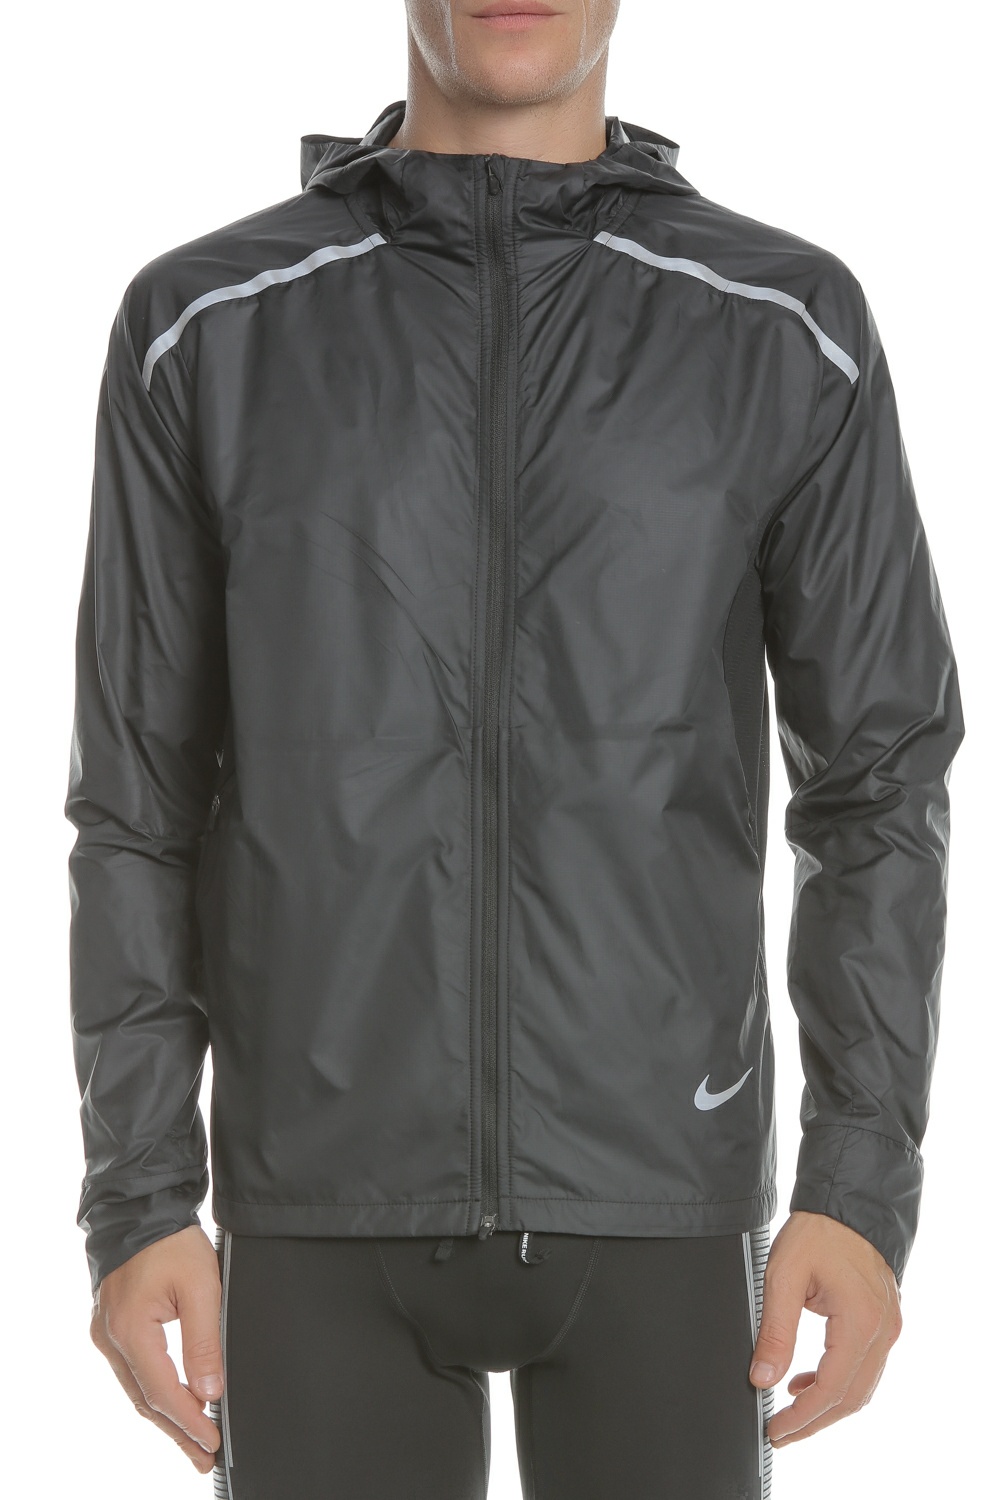 Ανδρικά/Ρούχα/Πανωφόρια/Τζάκετς NIKE - Ανδρικό τζάκετ με κουκούλα για τρέξιμο Nike Repel μαύρο-ασημί